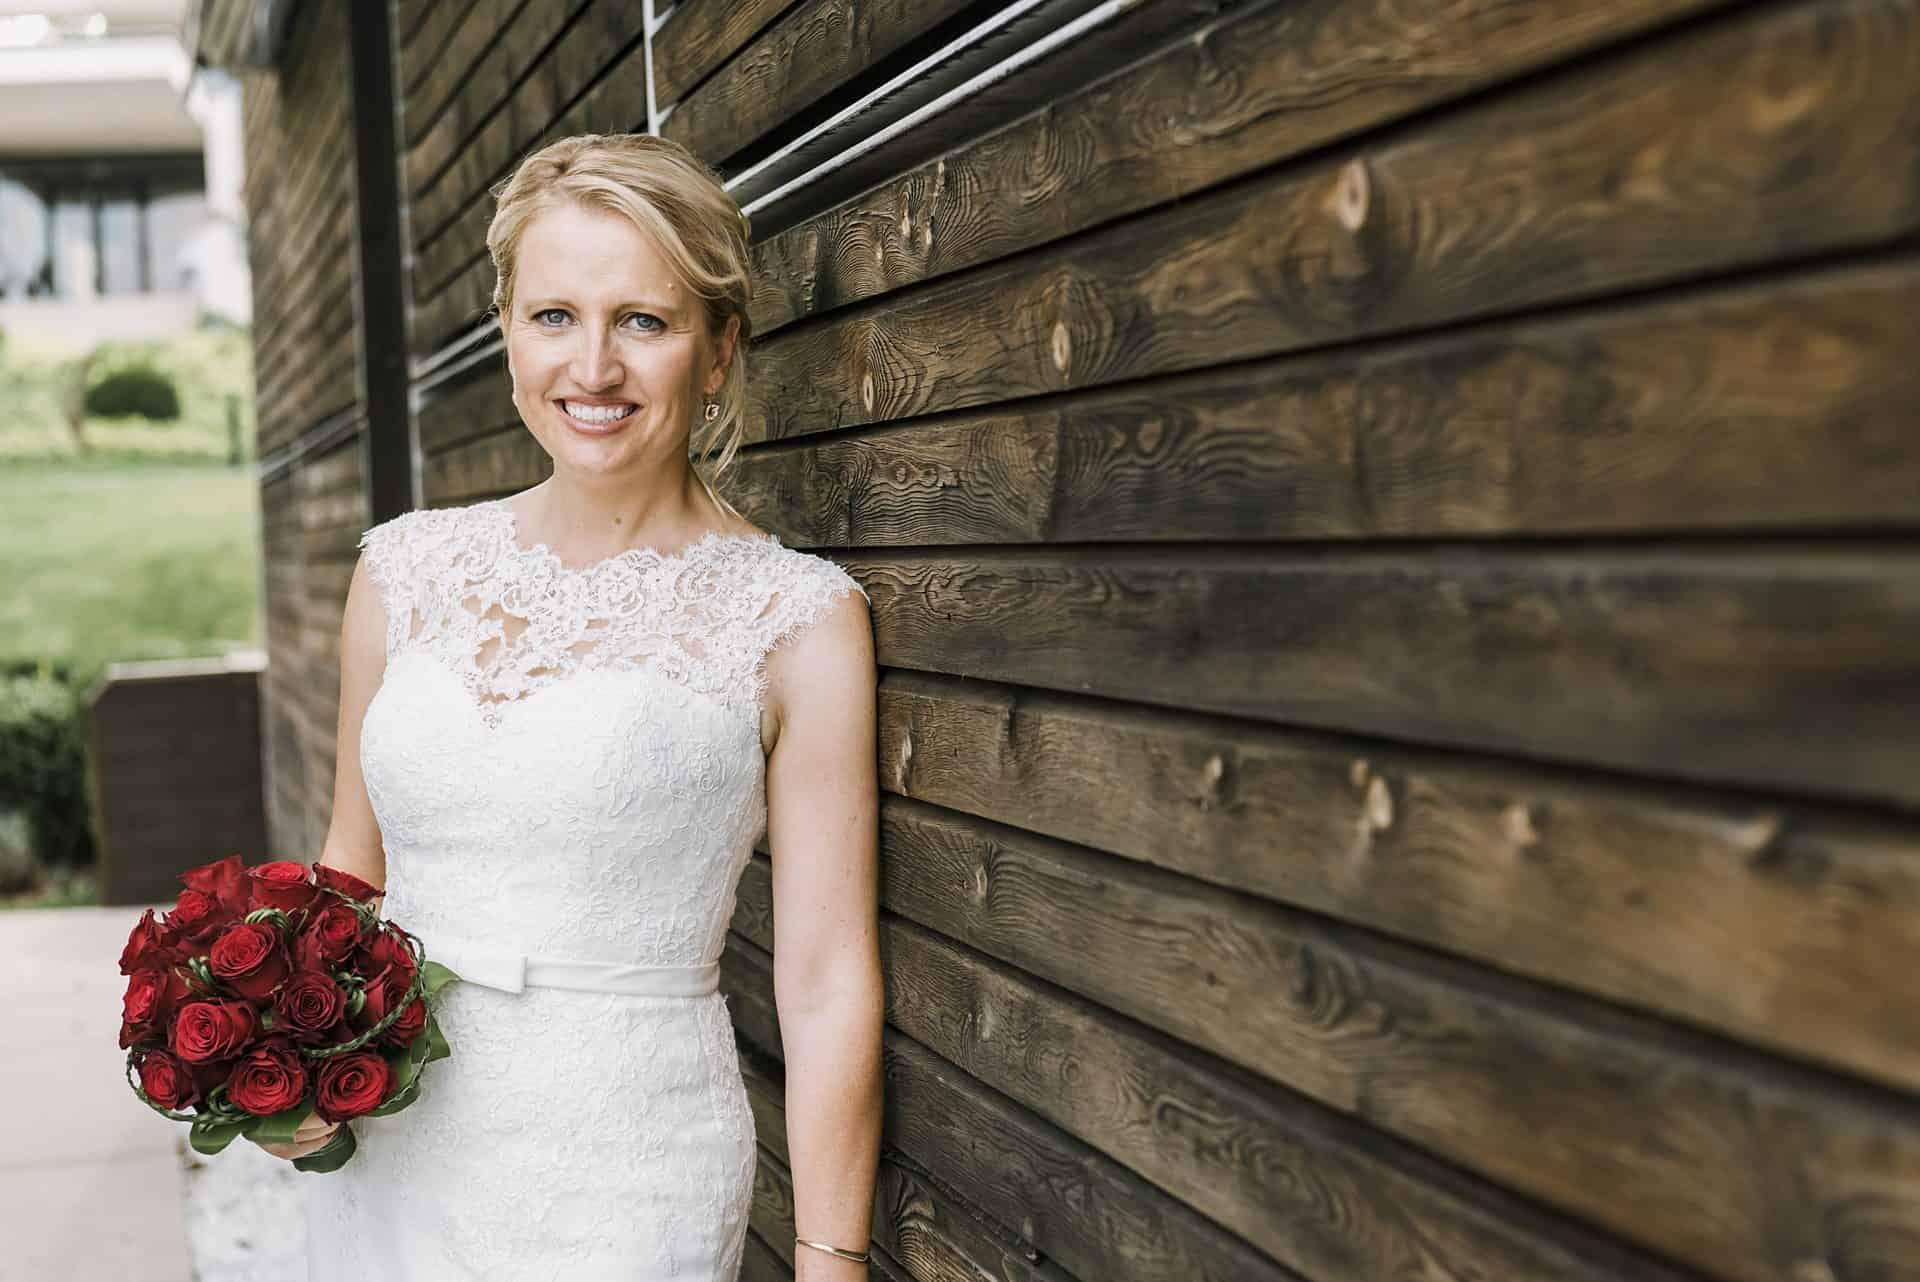 Eine Braut lehnt an einer Holzwand und hält einen Strauß roter Rosen in der Hand.